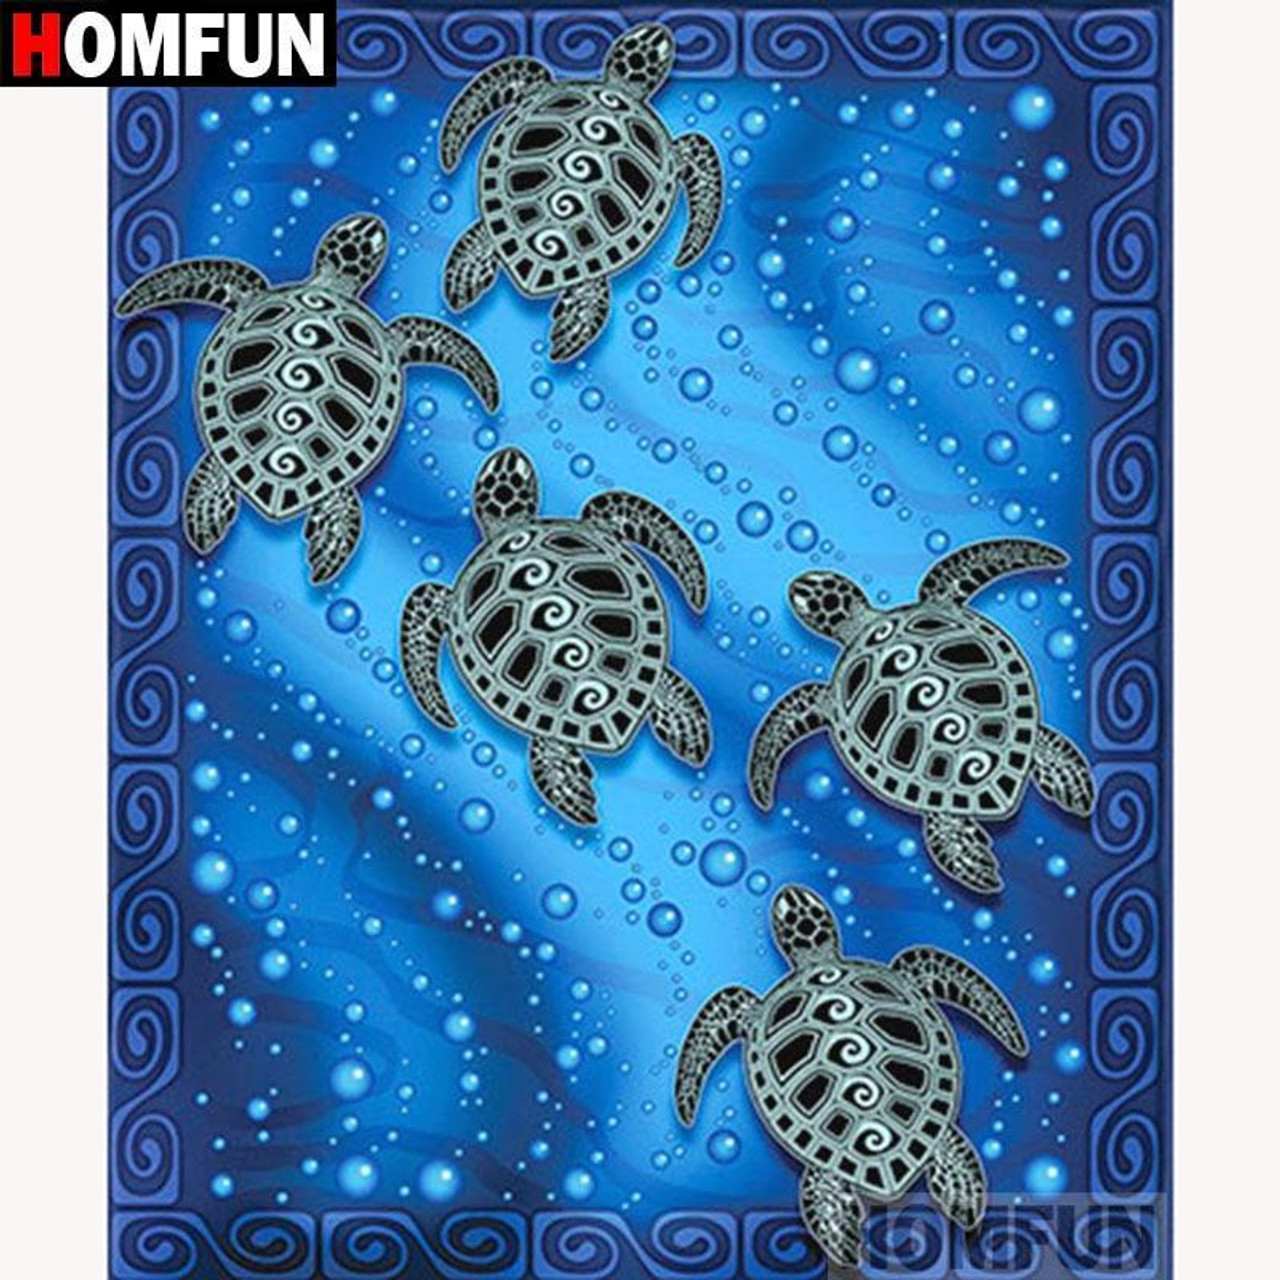 5D Diamond Painting Five Sea Turtles Kit